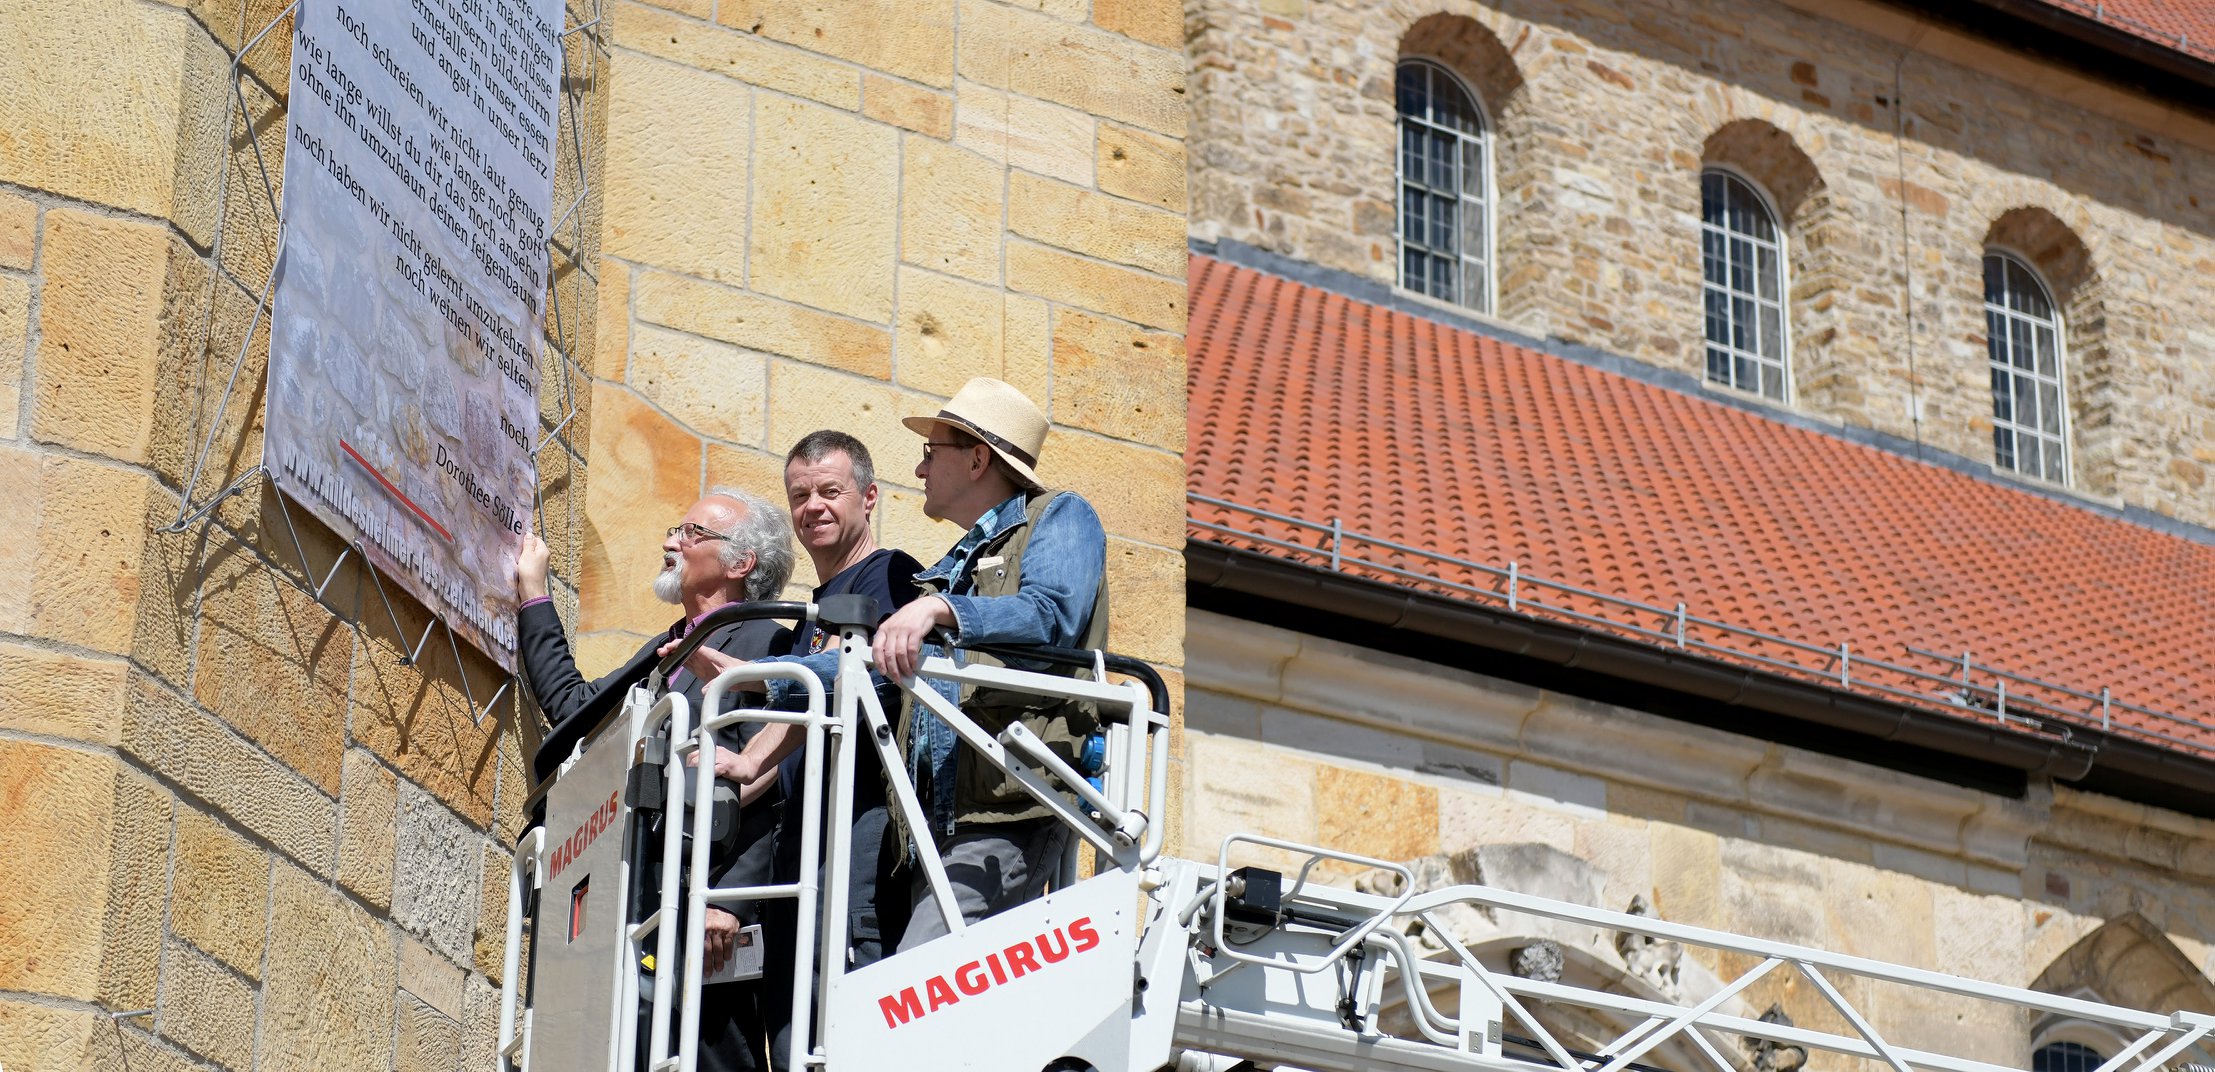 Jo Köhler bringt gemeinsam mit zwei Mitstreitern ein Gedichtbanner an der Fassade der Michaeliskirche an